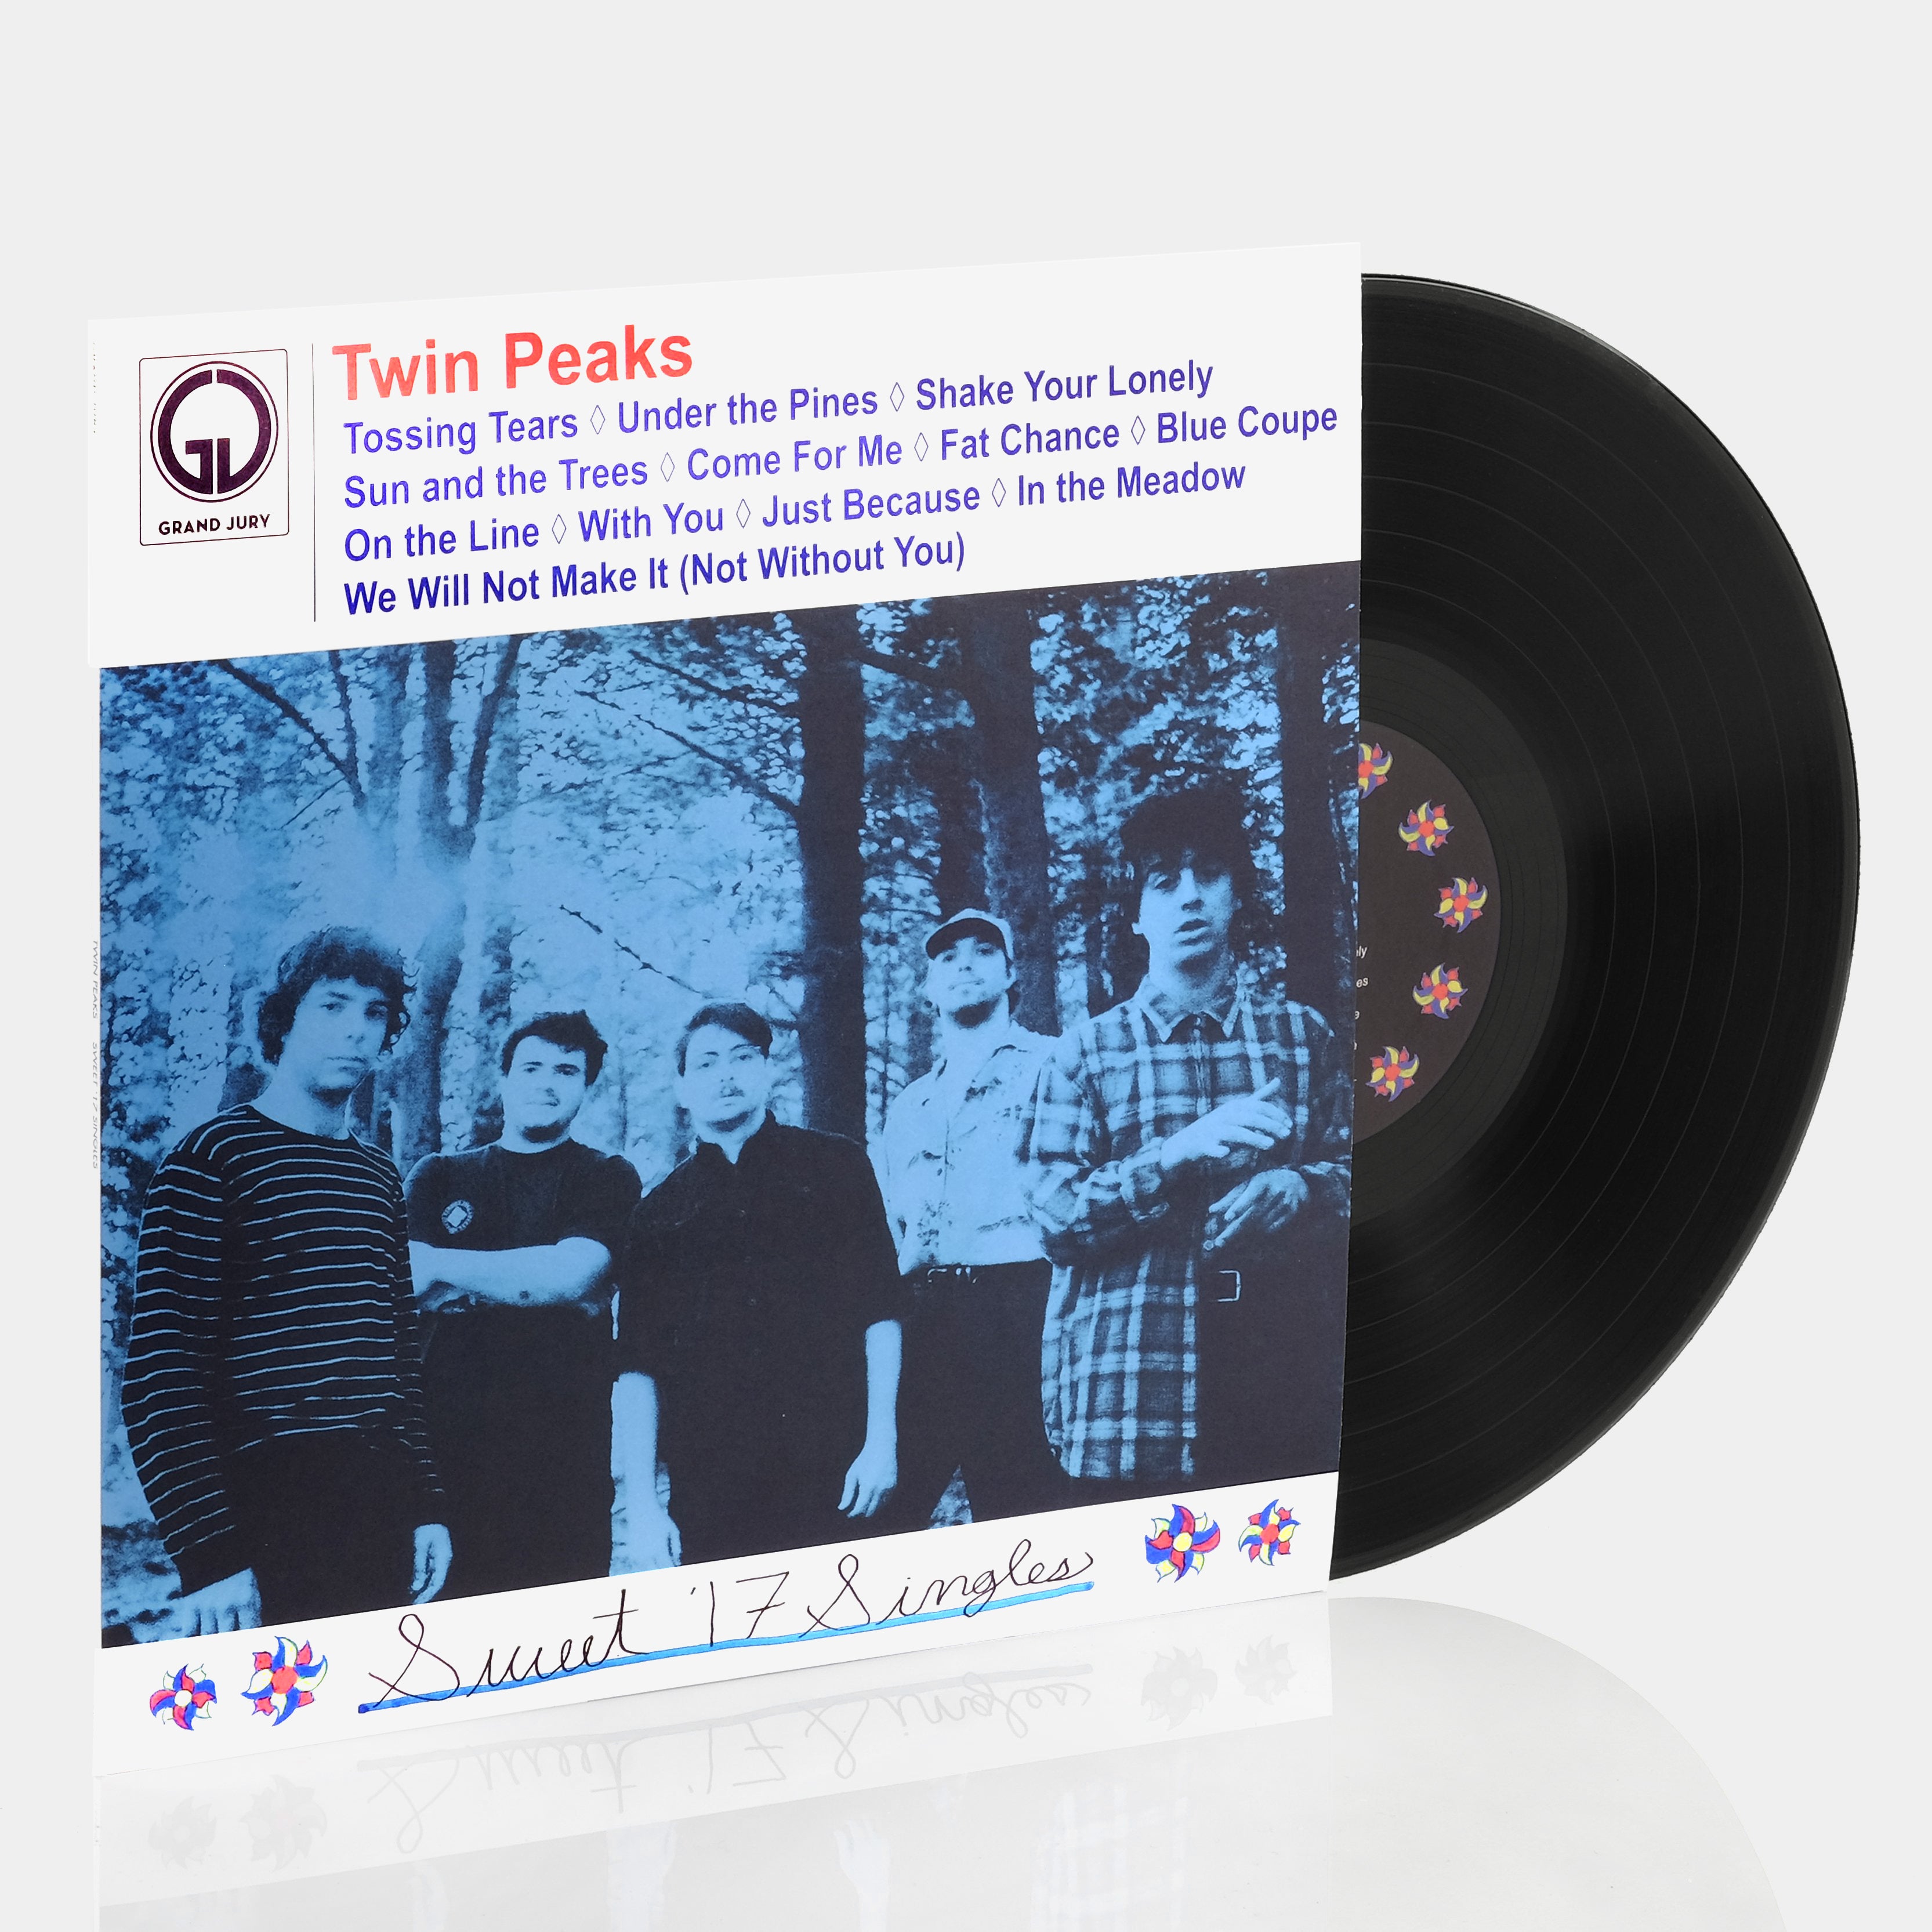 Twin Peaks - Sweet '17 Singles LP Vinyl Record